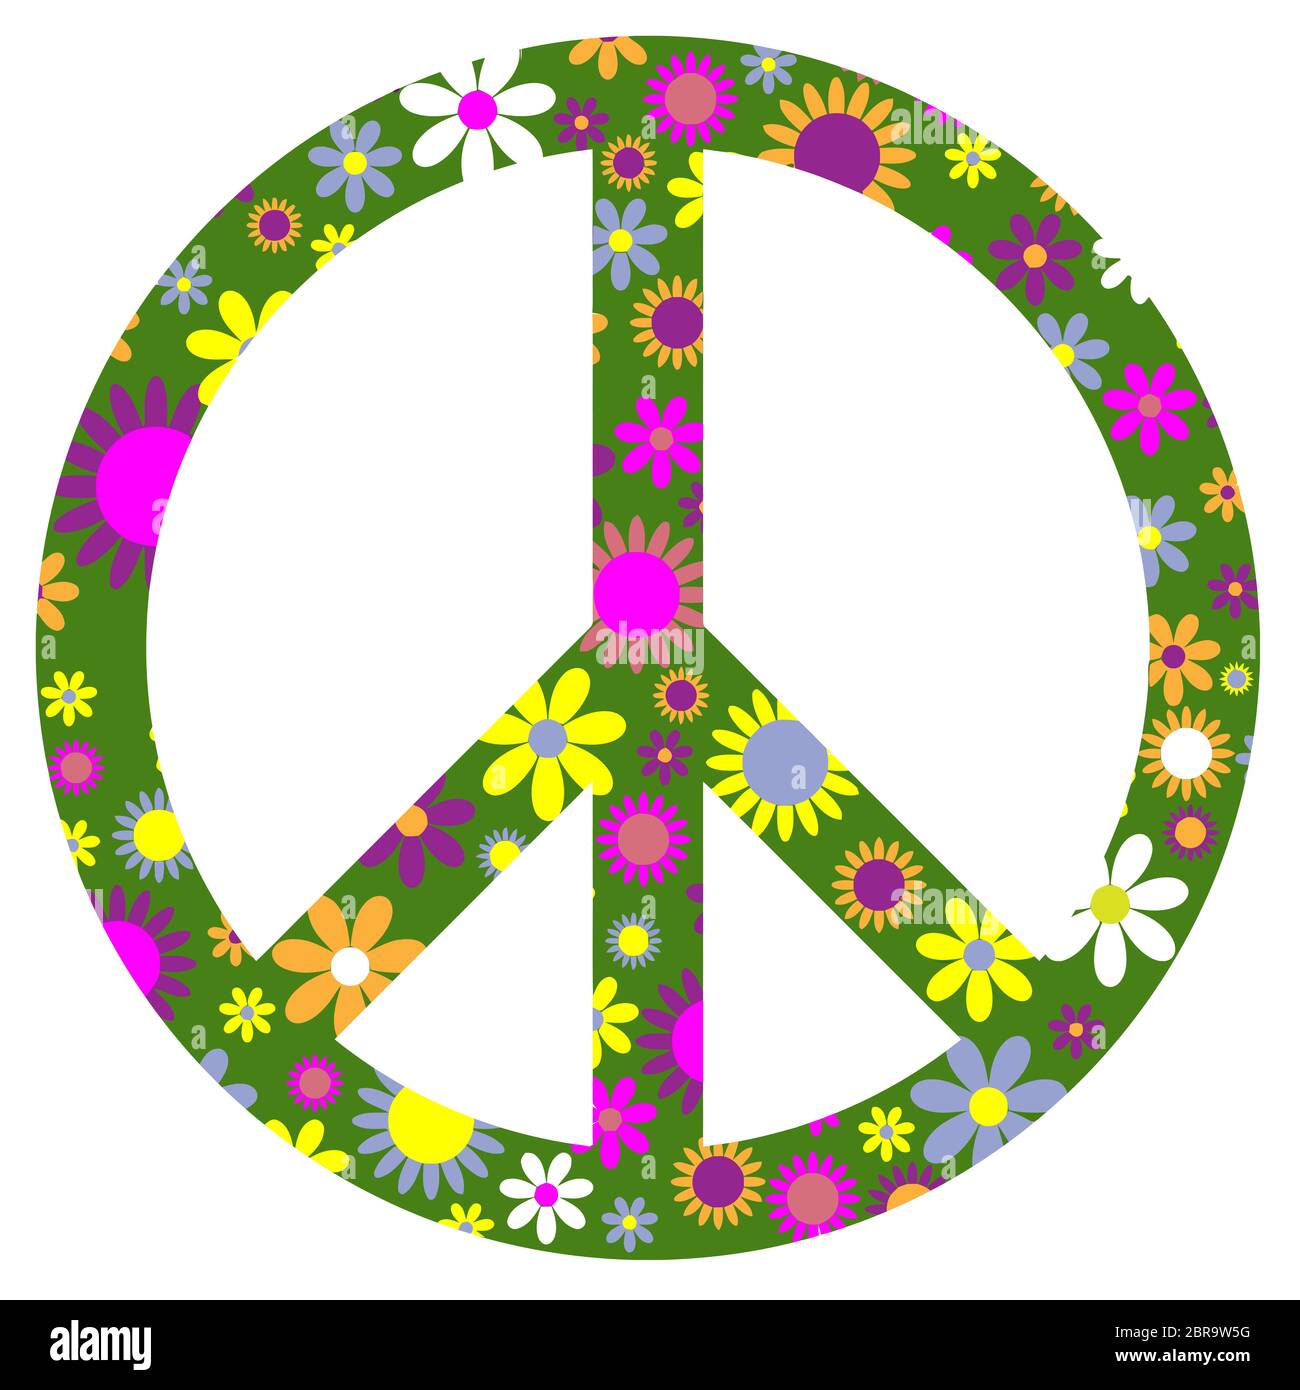 Le désarmement nucléaire paix amour movent hippie liberté fleurs illustration Banque D'Images